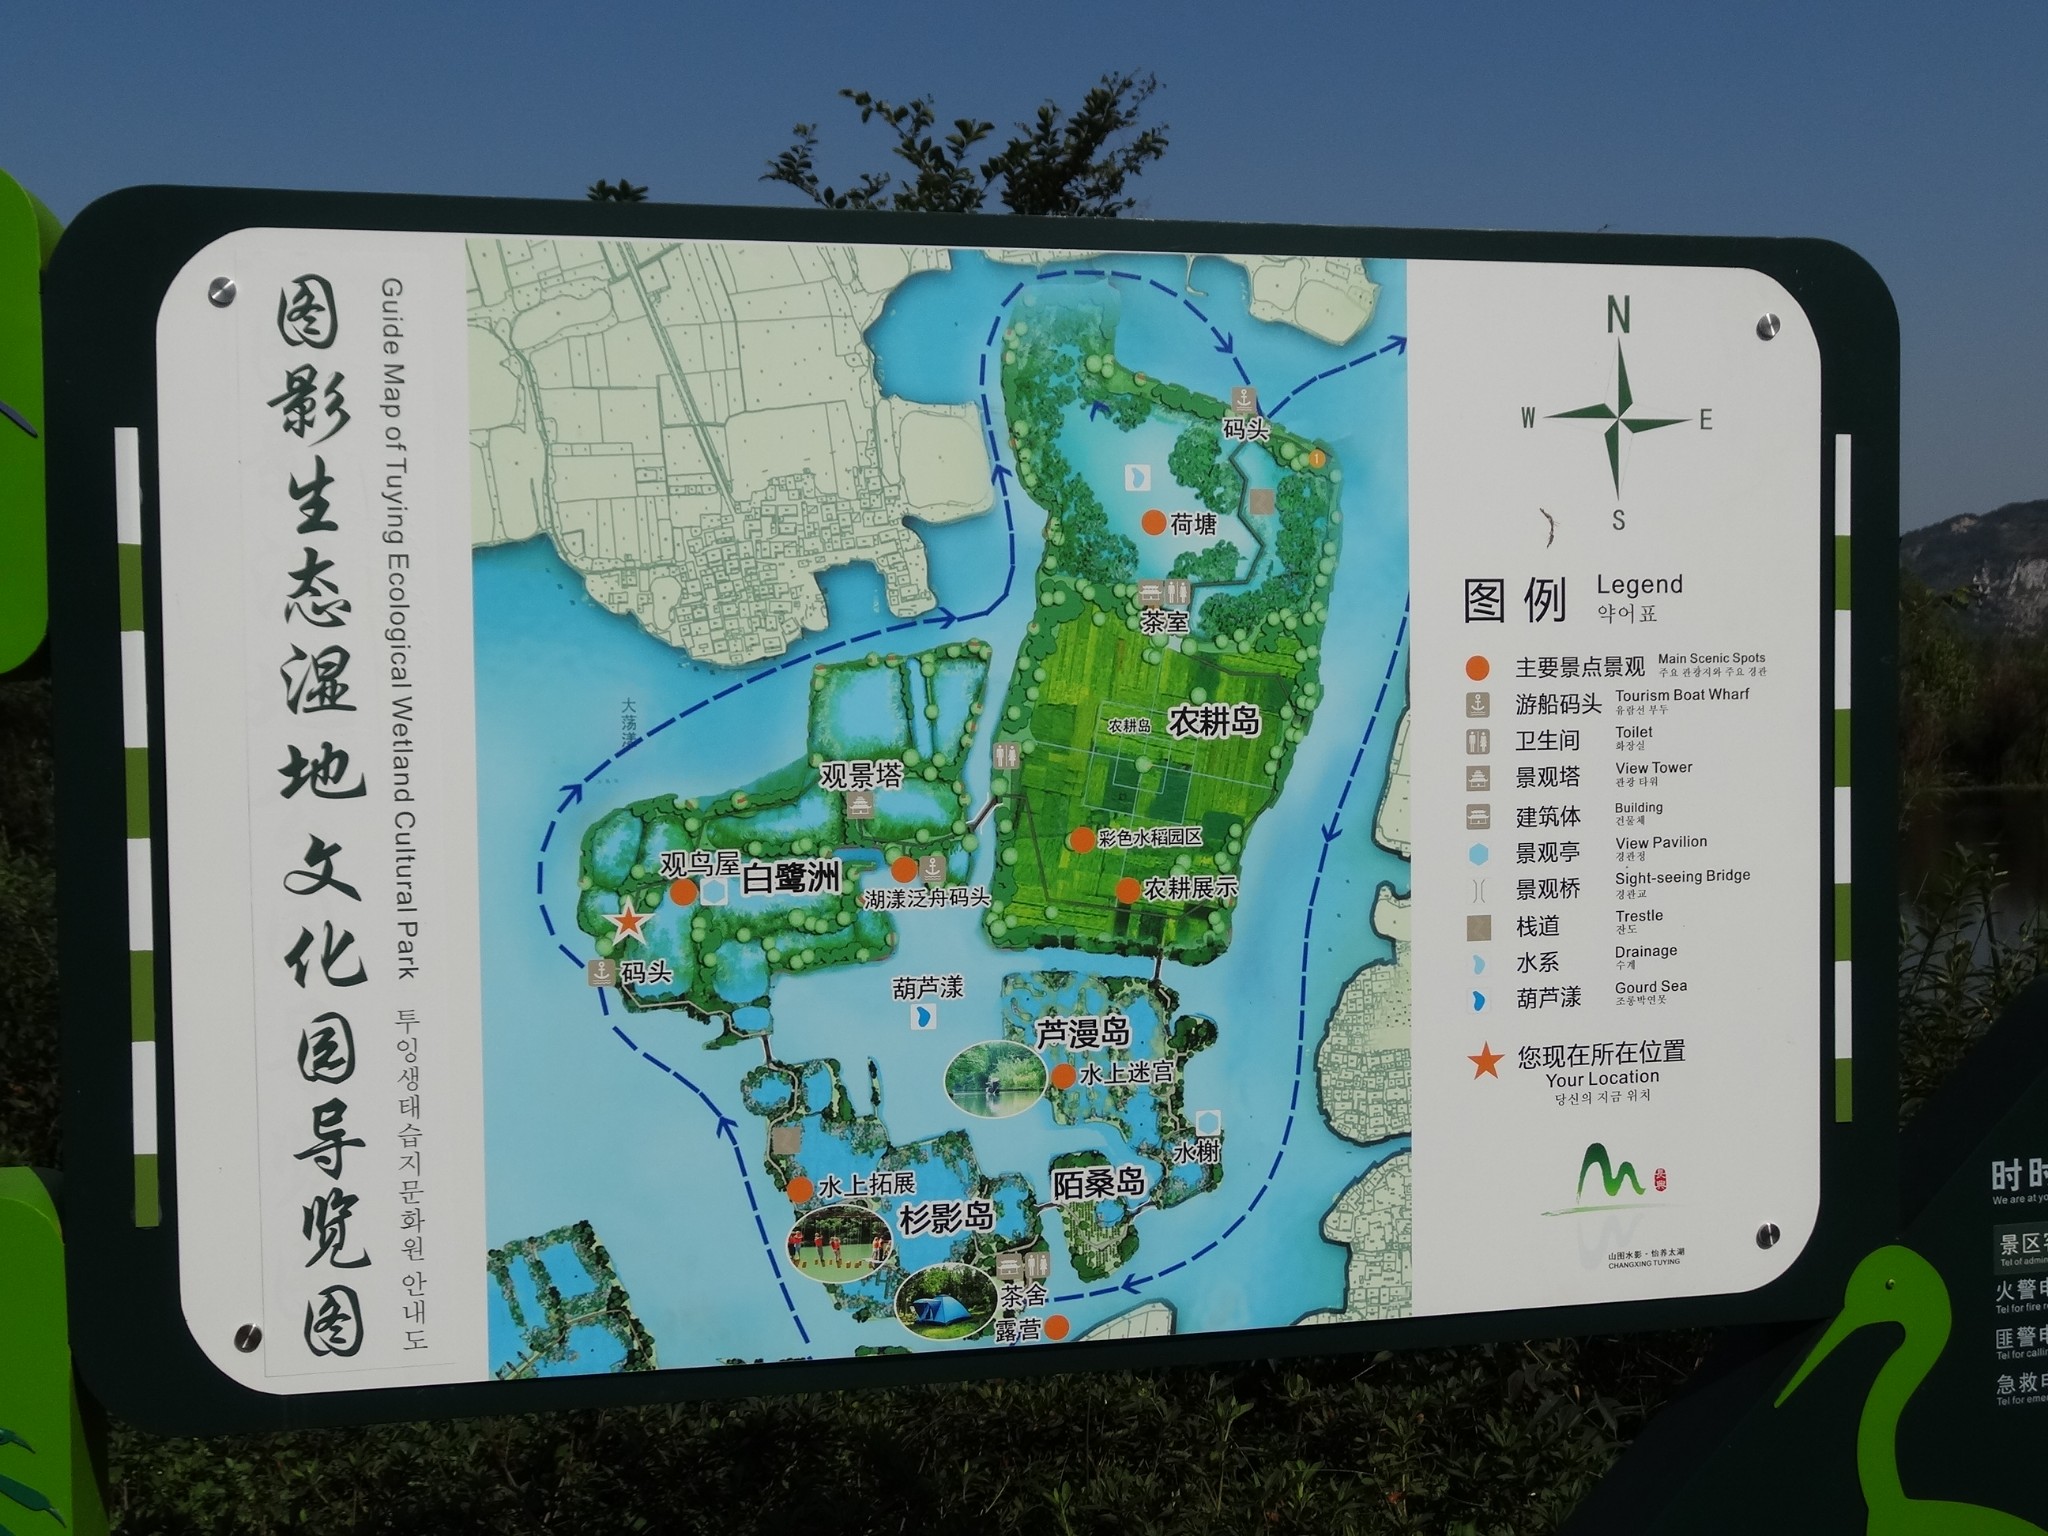 就是一个湿地公园,和杭州的西溪湿地差不多,空气很好,可以坐船到里面